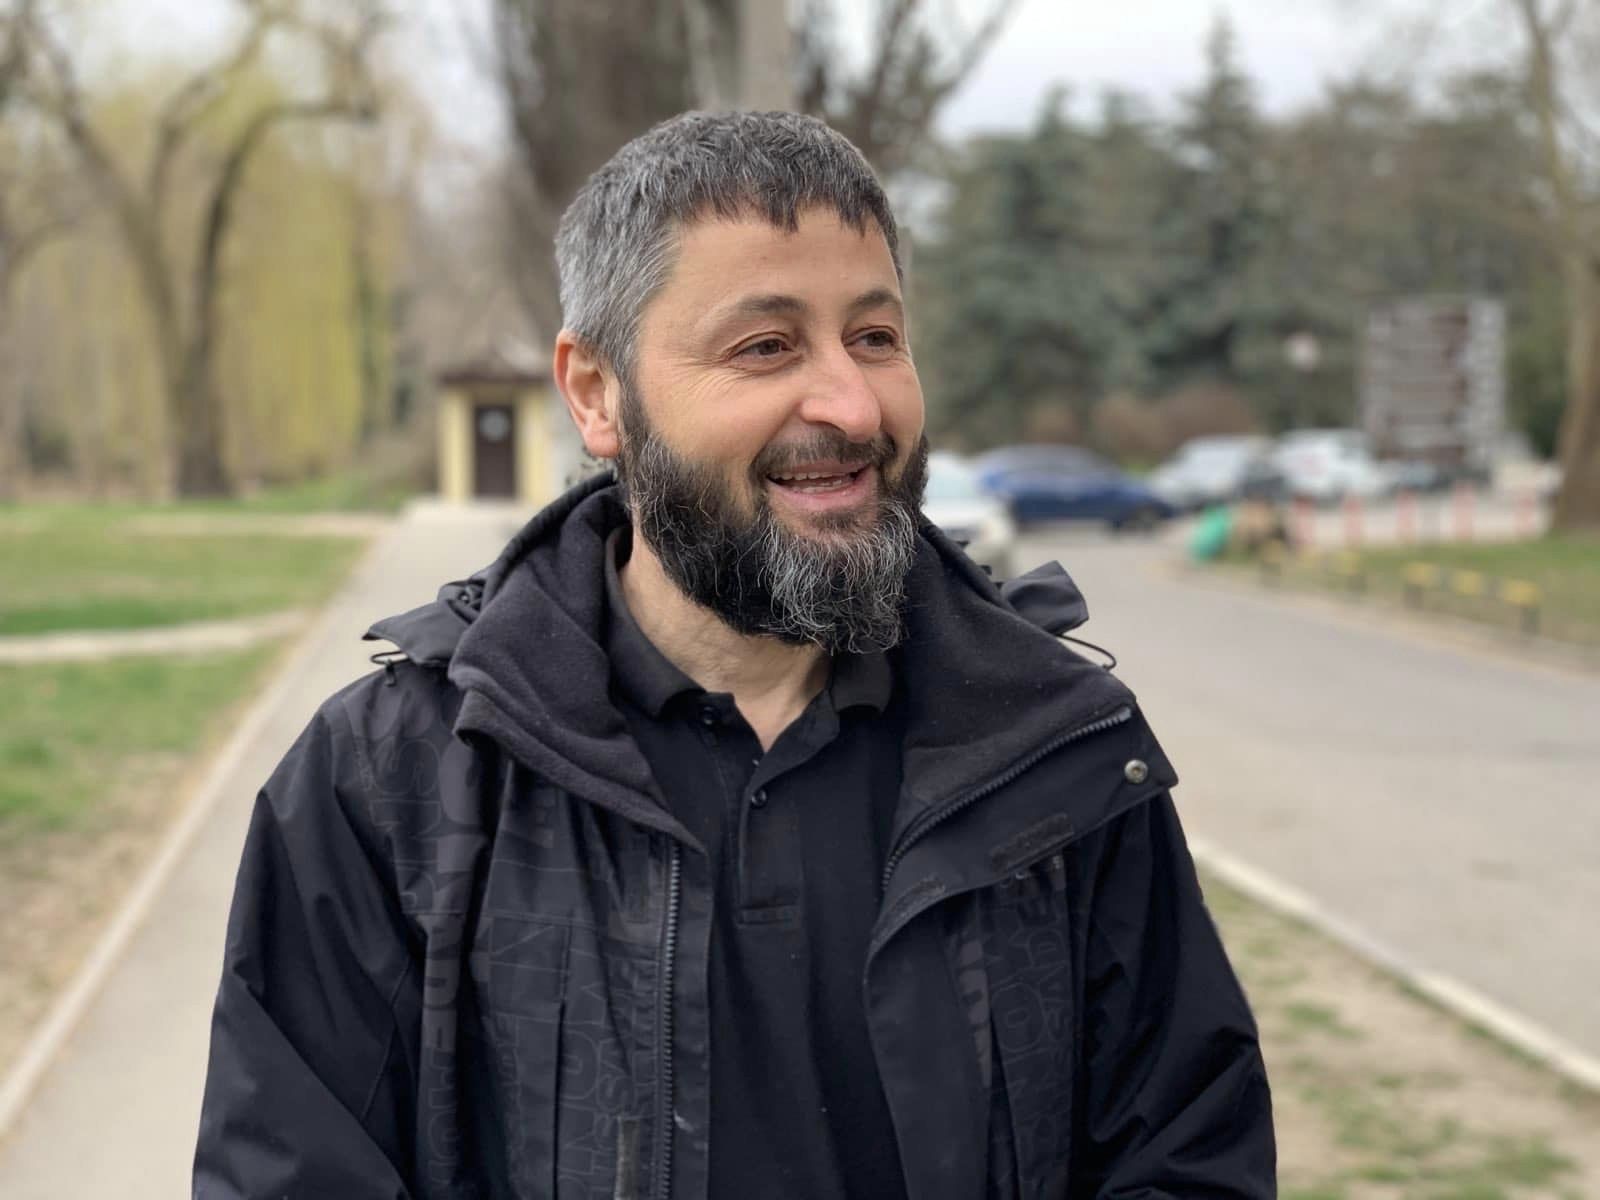 Після 2 тижнів арешту активіст Ленур Якубов вийшов із СІЗО